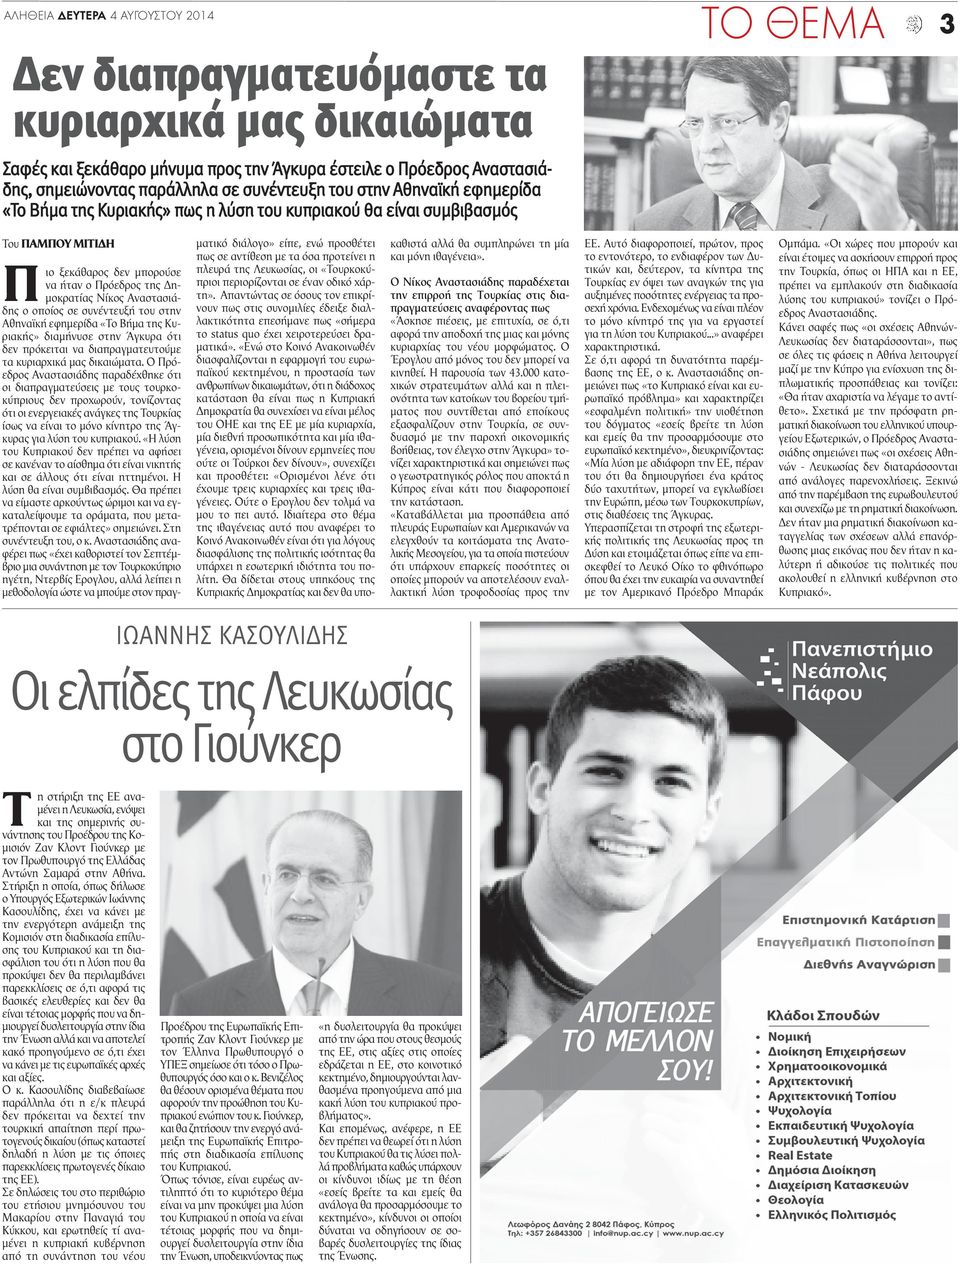 Αναστασιάδης ο οποίος σε συνέντευξή του στην Αθηναϊκή εφημερίδα «Το Βήμα της Κυριακής» διαμήνυσε στην Άγκυρα ότι δεν πρόκειται να διαπραγματευτούμε τα κυριαρχικά μας δικαιώματα.